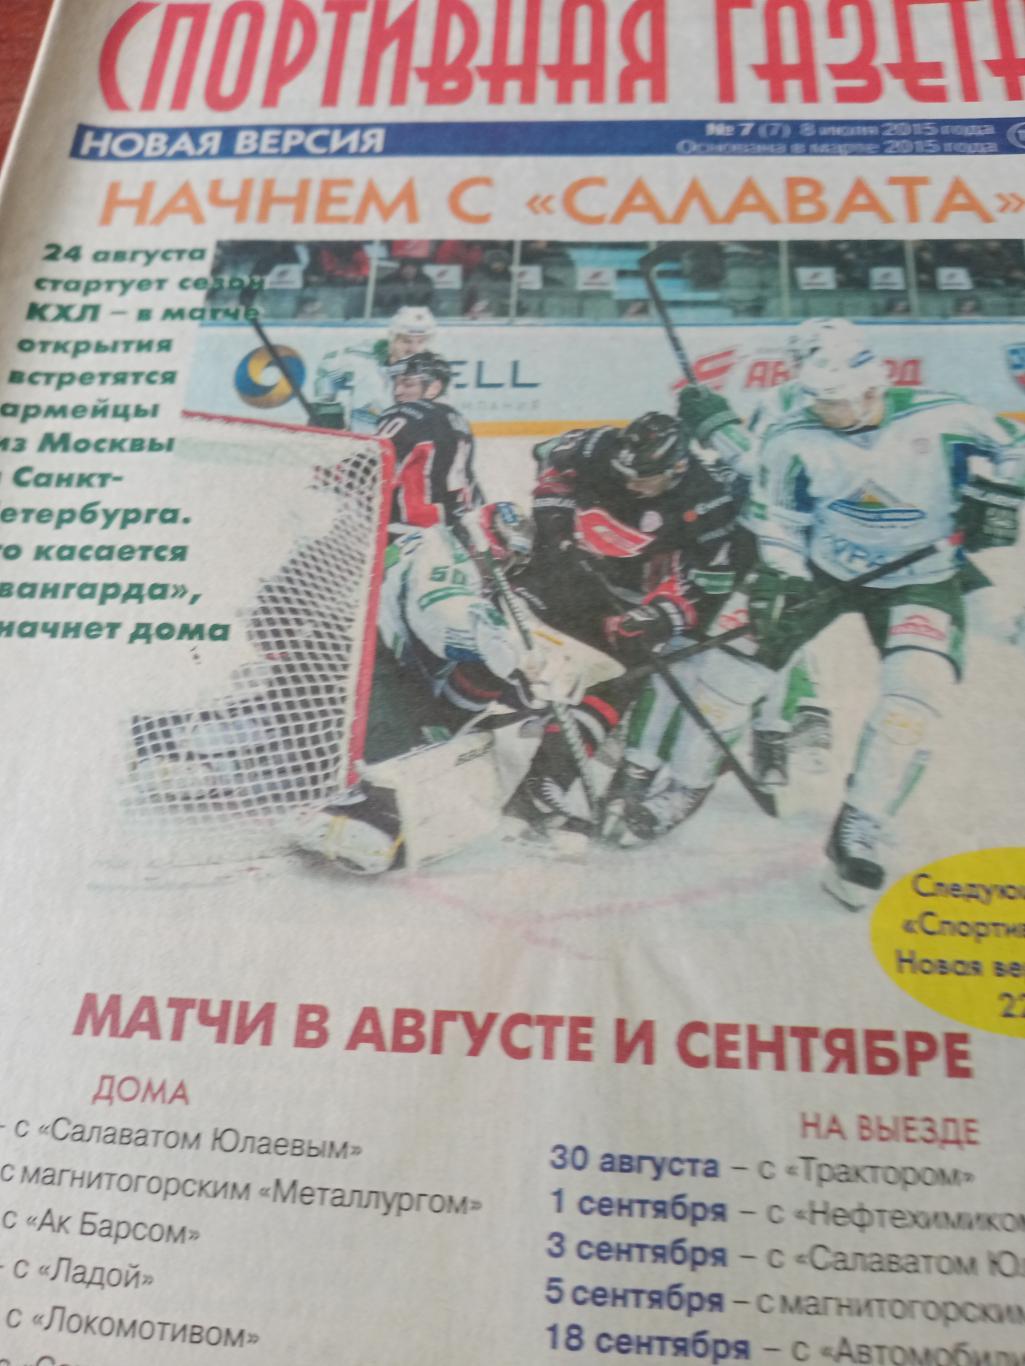 Спортивная газета Новая версия. Омск. № 7.2015 год